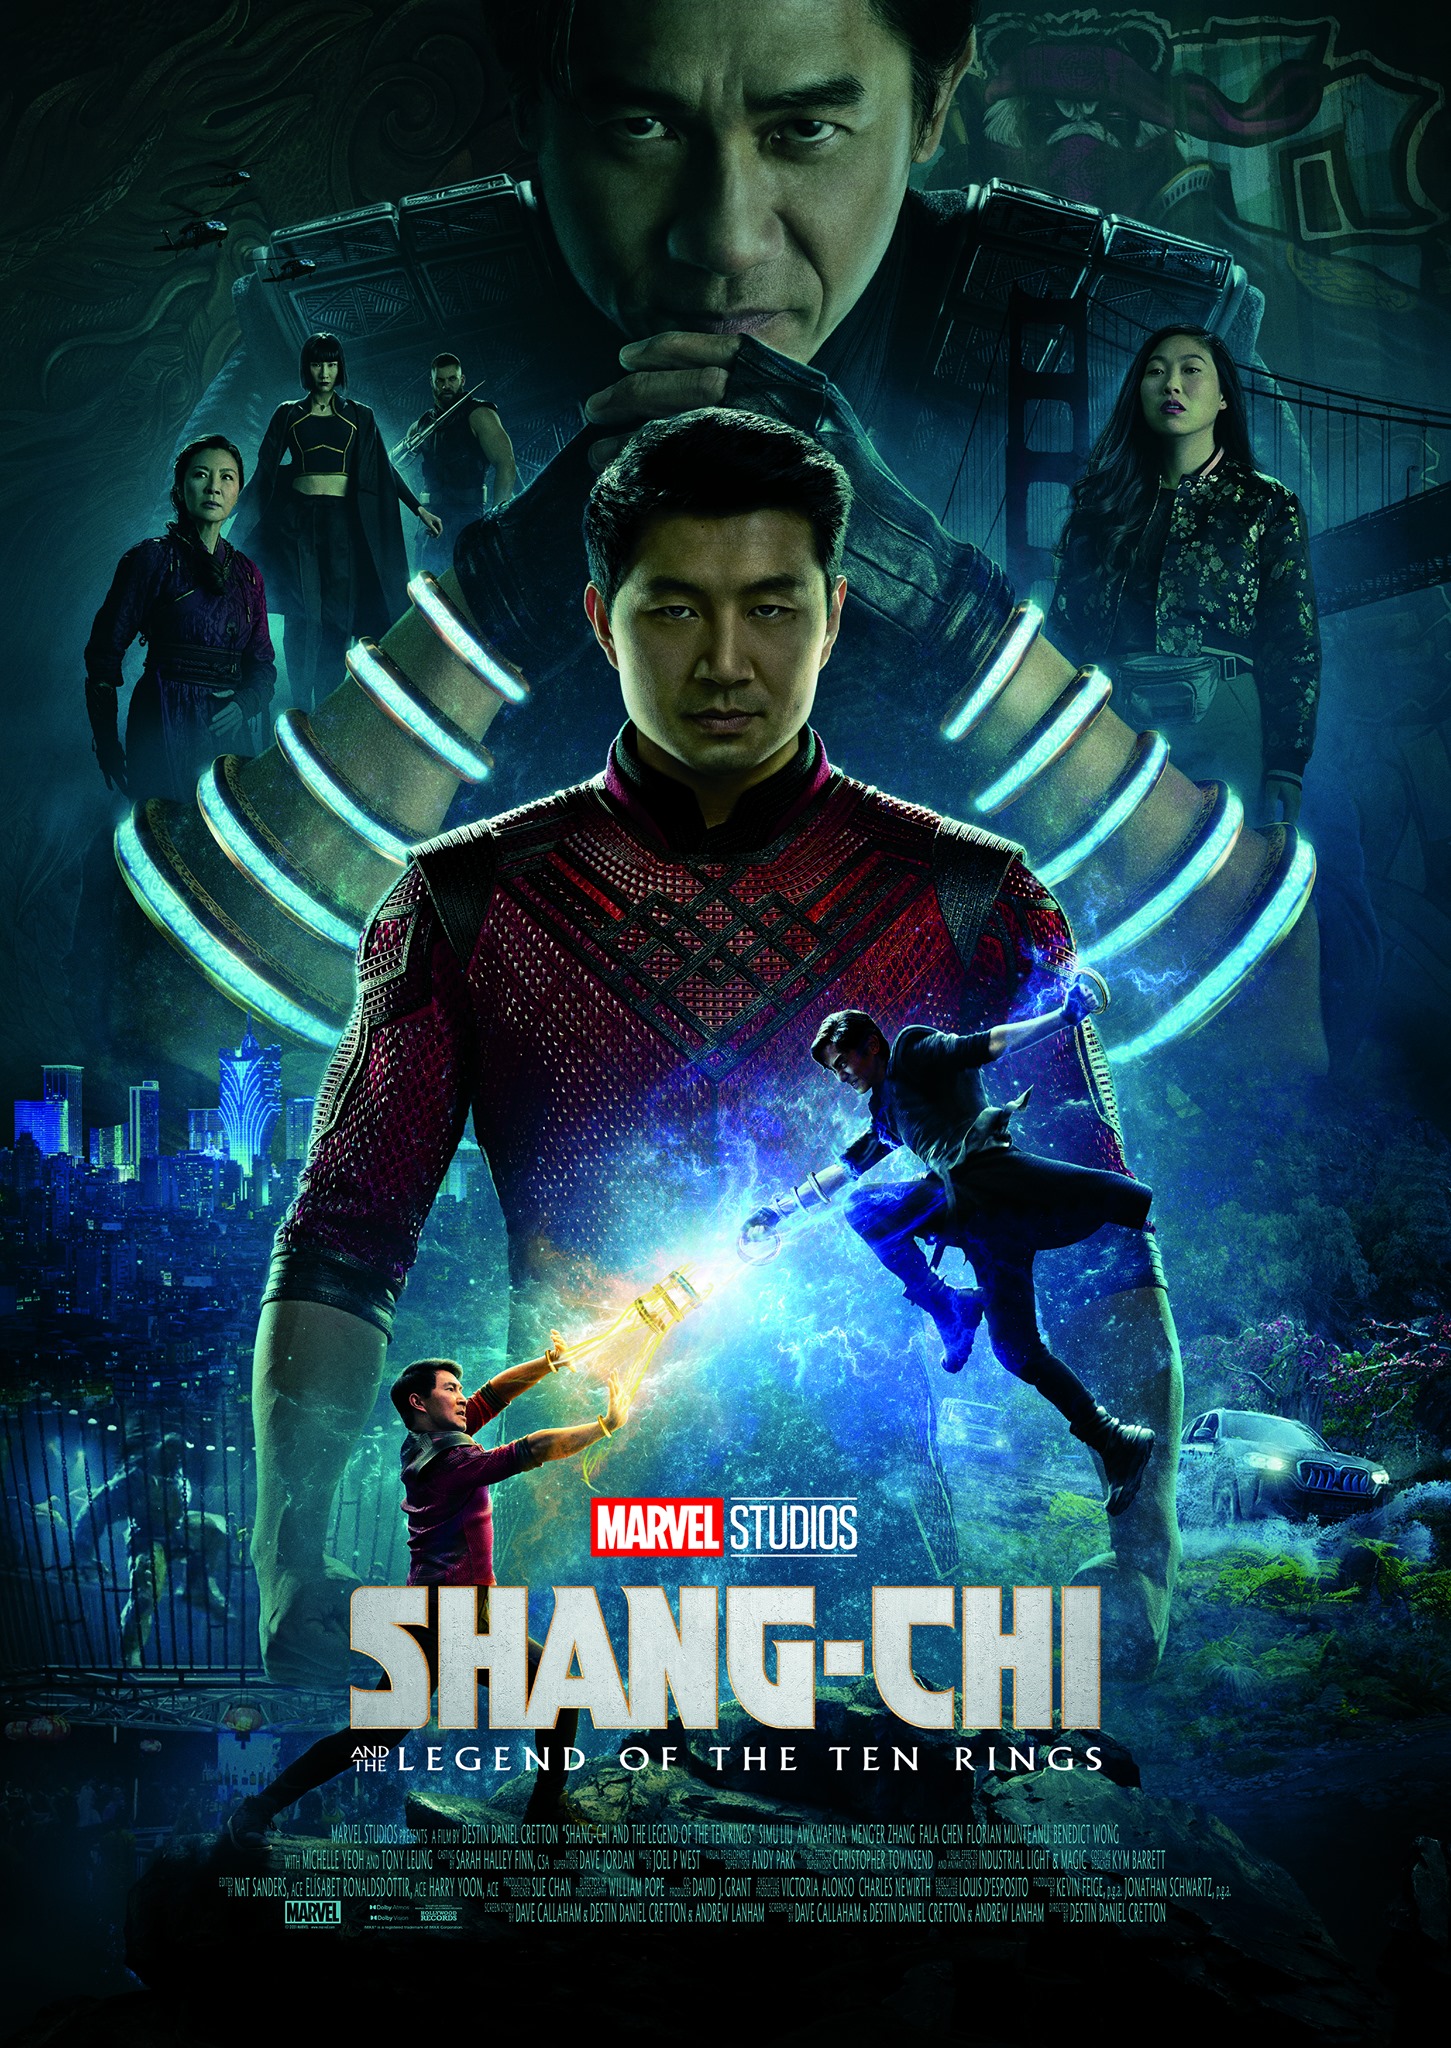 „Shang-Chi and the Legend of the Ten Rings” zur Zeit in den Kinos: Actionreiche, spannende Unterhaltung mit dem neuen Film aus dem MCU, dem Marvel Cinematic Universe.